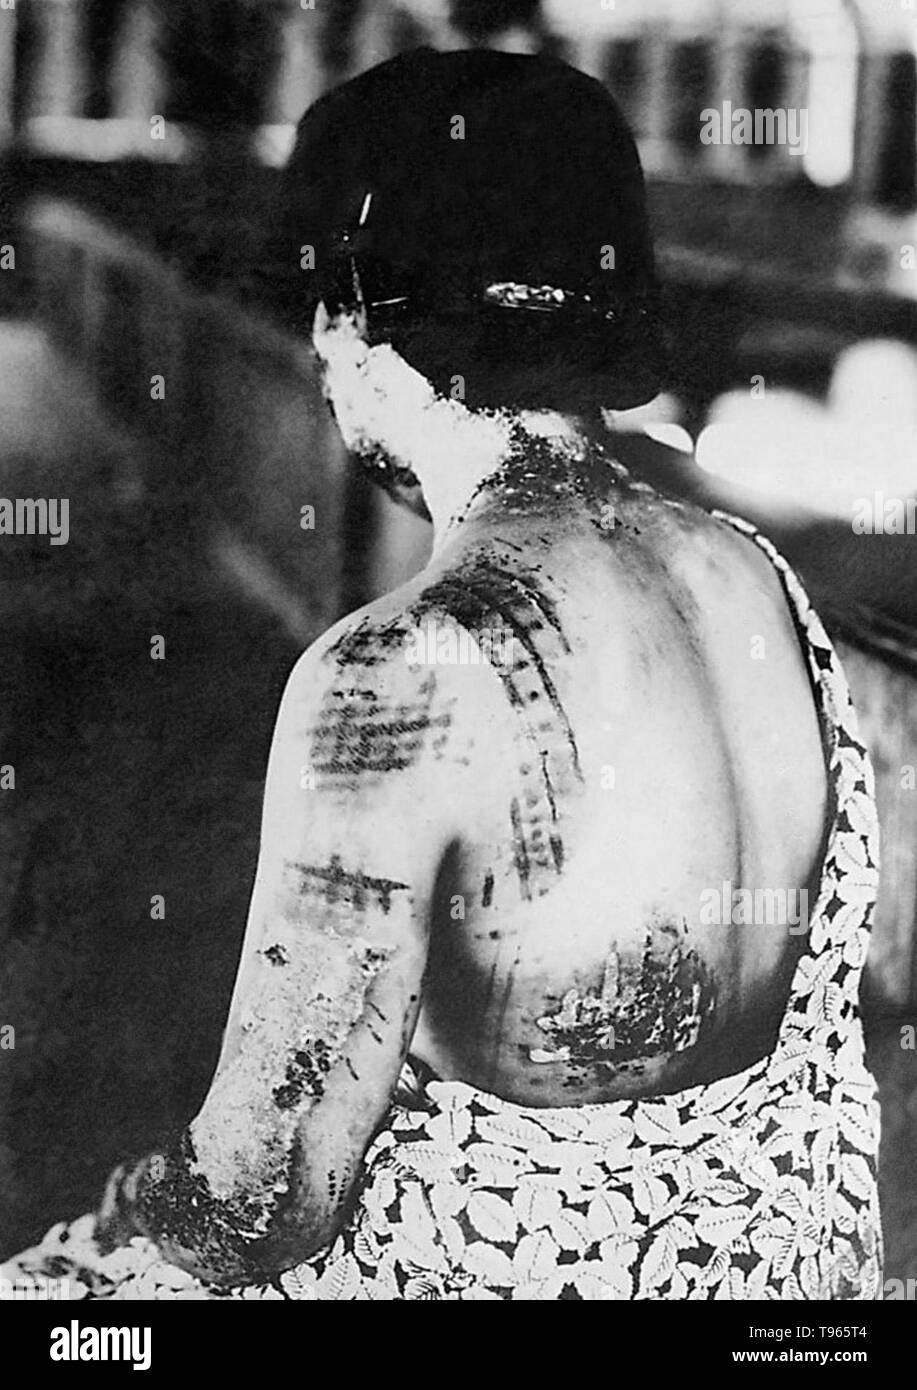 Le 6 août 1945, près de la fin de la Seconde Guerre mondiale, les États-Unis ont abandonné une bombe atomique sur la ville japonaise d'Hiroshima, détruisant la ville et tuant plus de 70 000 personnes. Dans cette image à partir d'un rapport médical de l'attentat de couleur sombre, le modèle d'une vetements femme est montré pour avoir absorbé de l'énergie thermique et brûlé la peau, surtout autour de plus d'un sous-domaines, comme les épaules. Banque D'Images